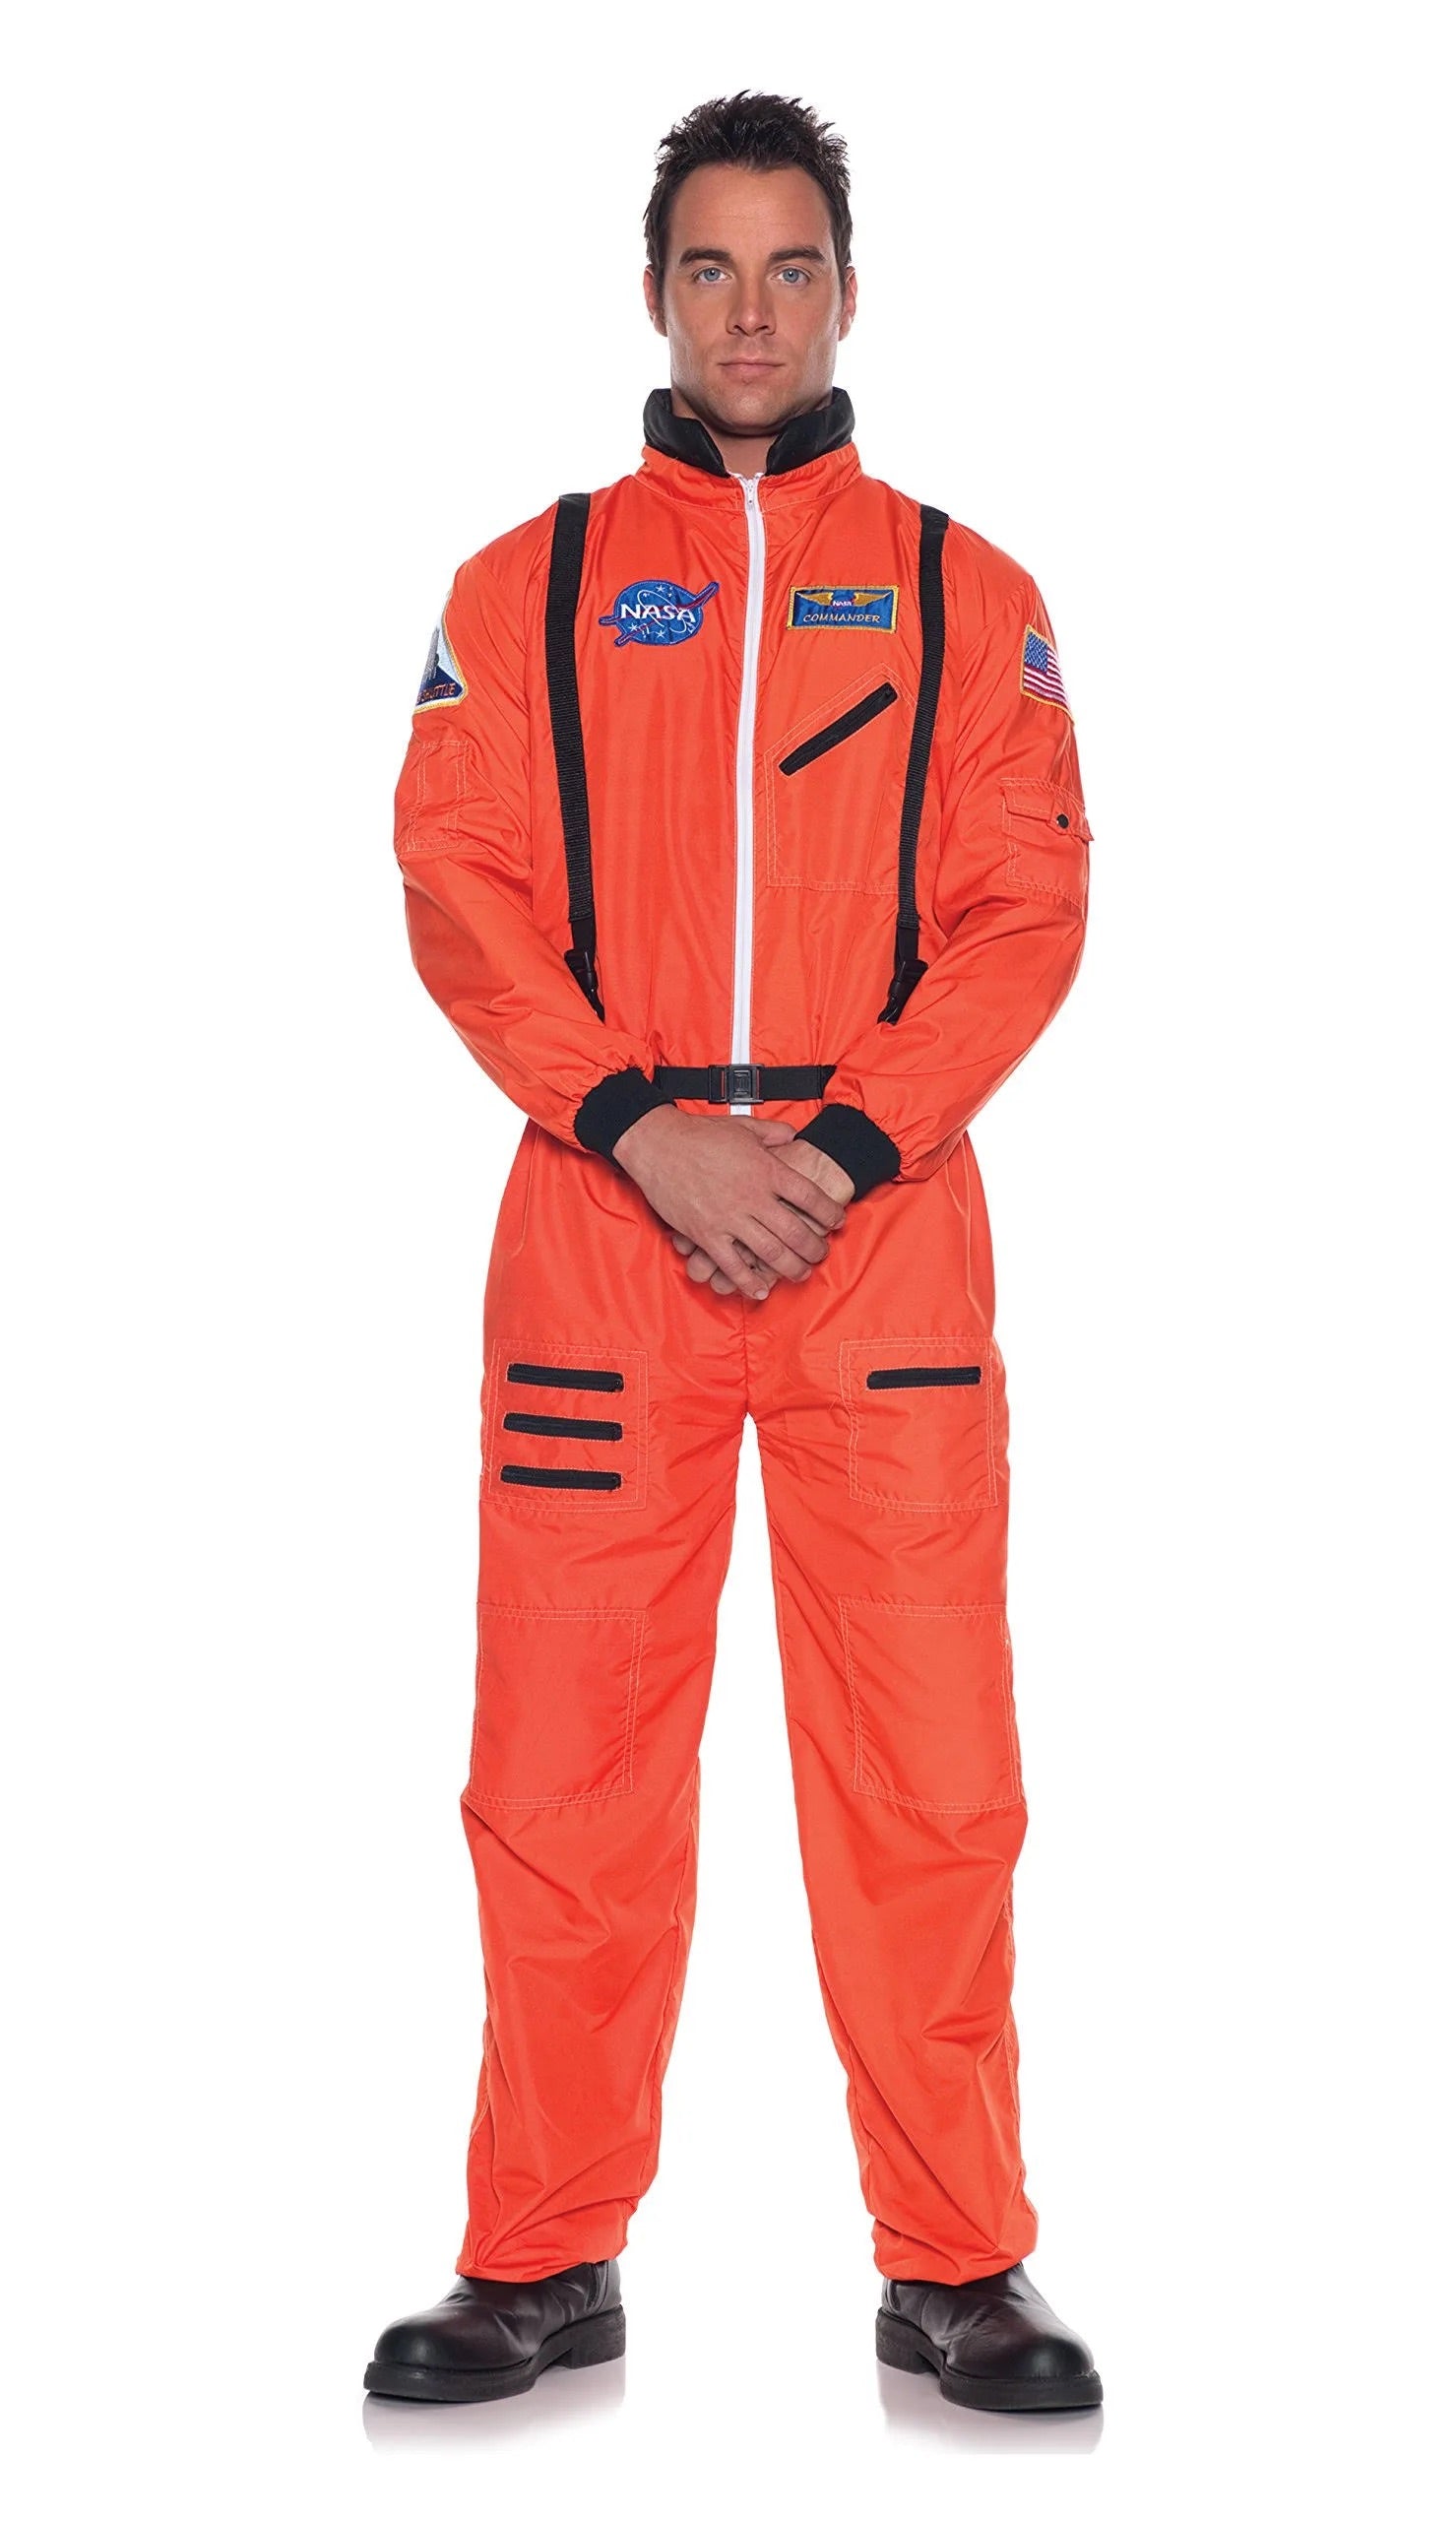 Orange Astronaut Costume - Adult